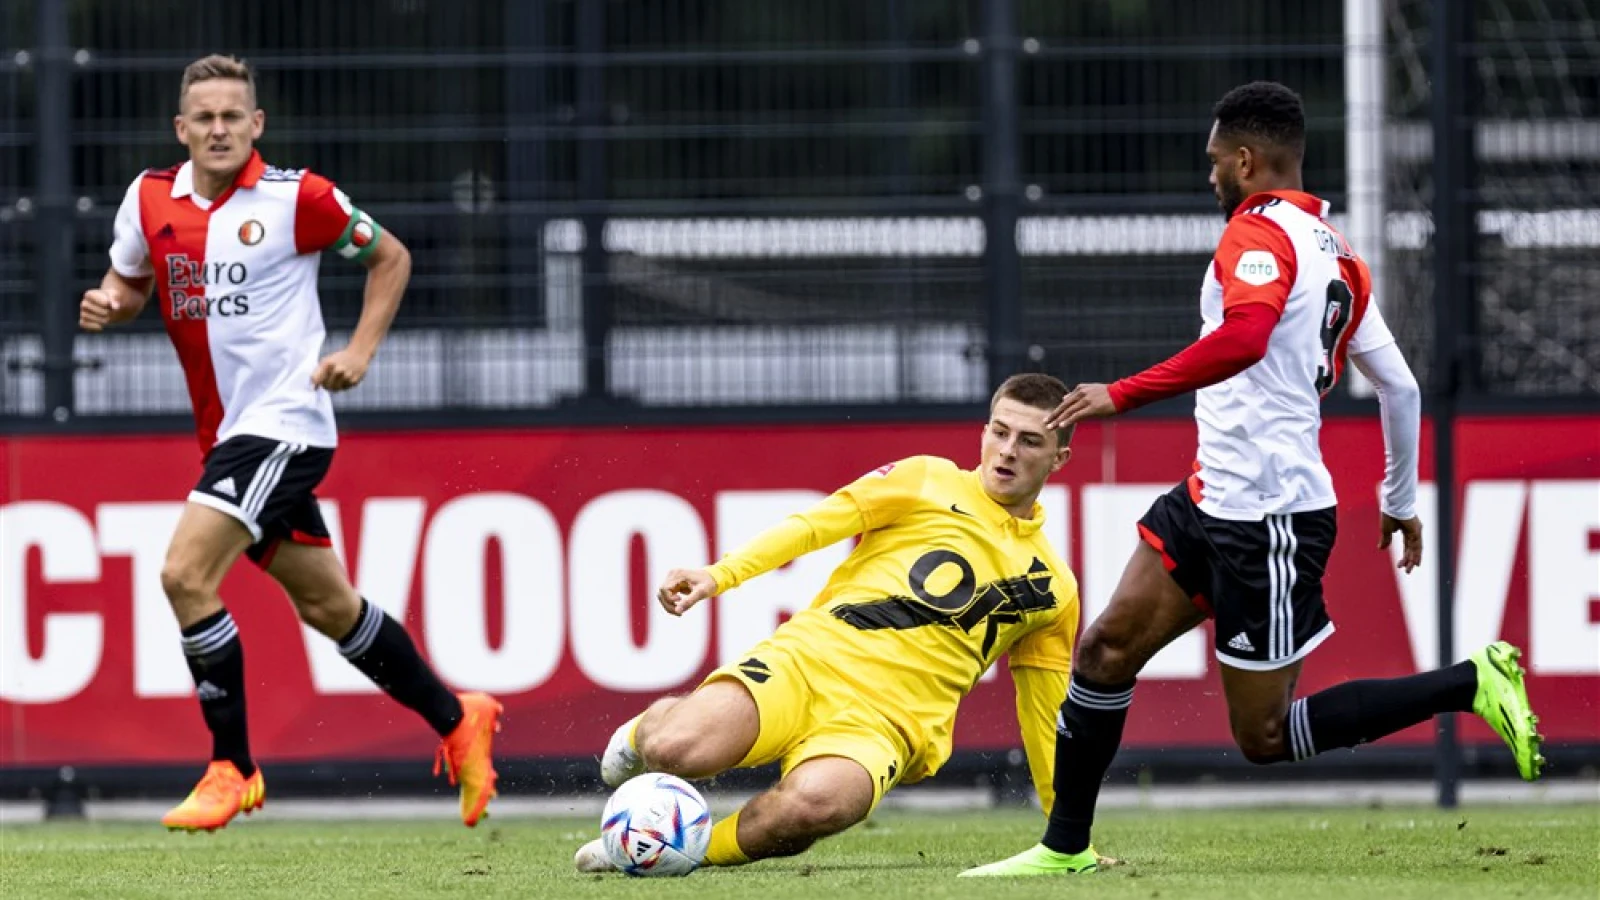 LIVE | Feyenoord - NAC Breda 6-1 | Einde wedstrijd